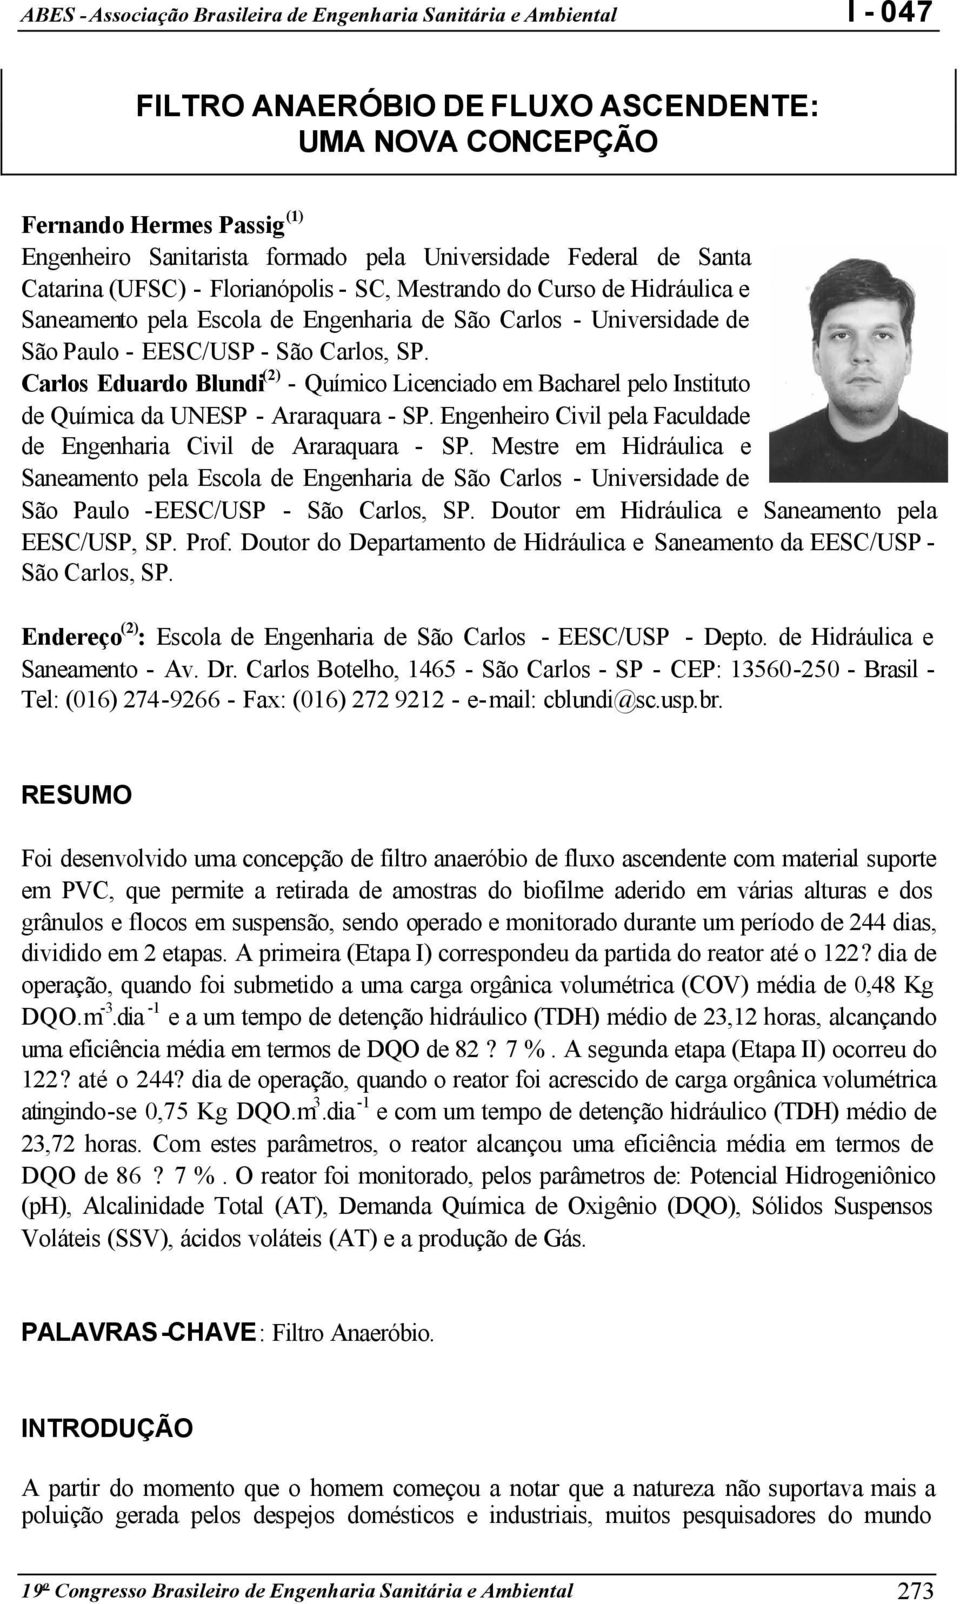 Carlos Eduardo Blundi (2) - Químico Licenciado em Bacharel pelo Instituto de Química da UNESP - Araraquara - SP. Engenheiro Civil pela Faculdade de Engenharia Civil de Araraquara - SP.